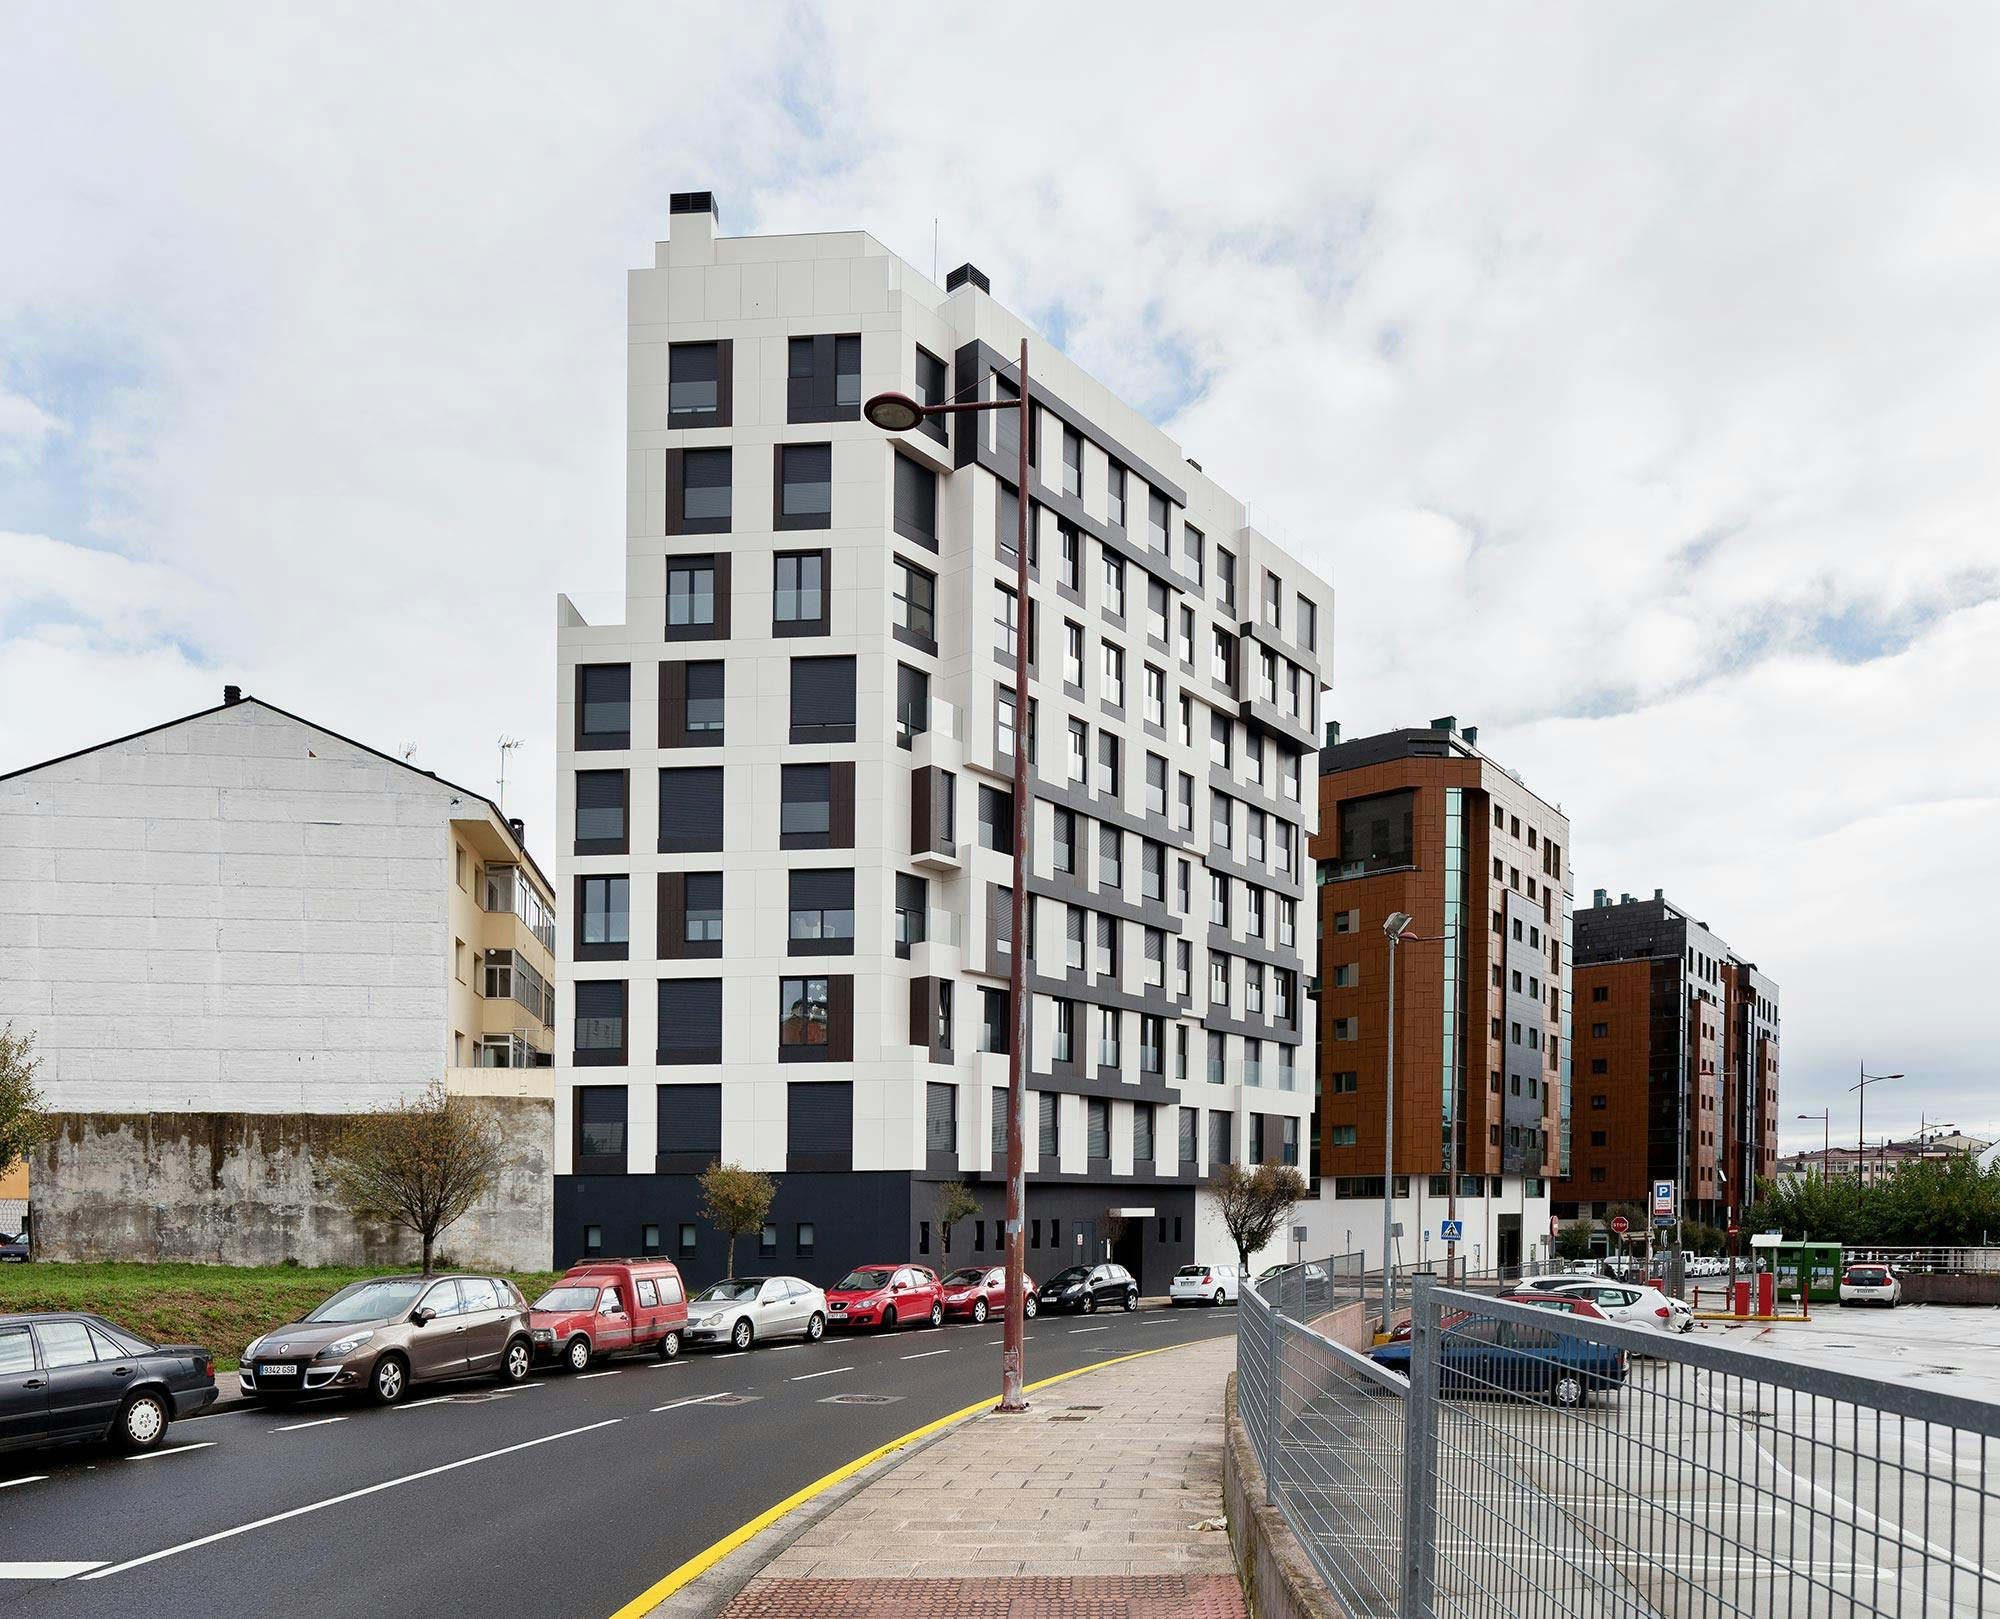 Image 33 of Edificio Aresa 12.jpg?auto=format%2Ccompress&ixlib=php 3.3 in A state-of-the-art building in Lugo chooses Dekton to clad its complex façade - Cosentino